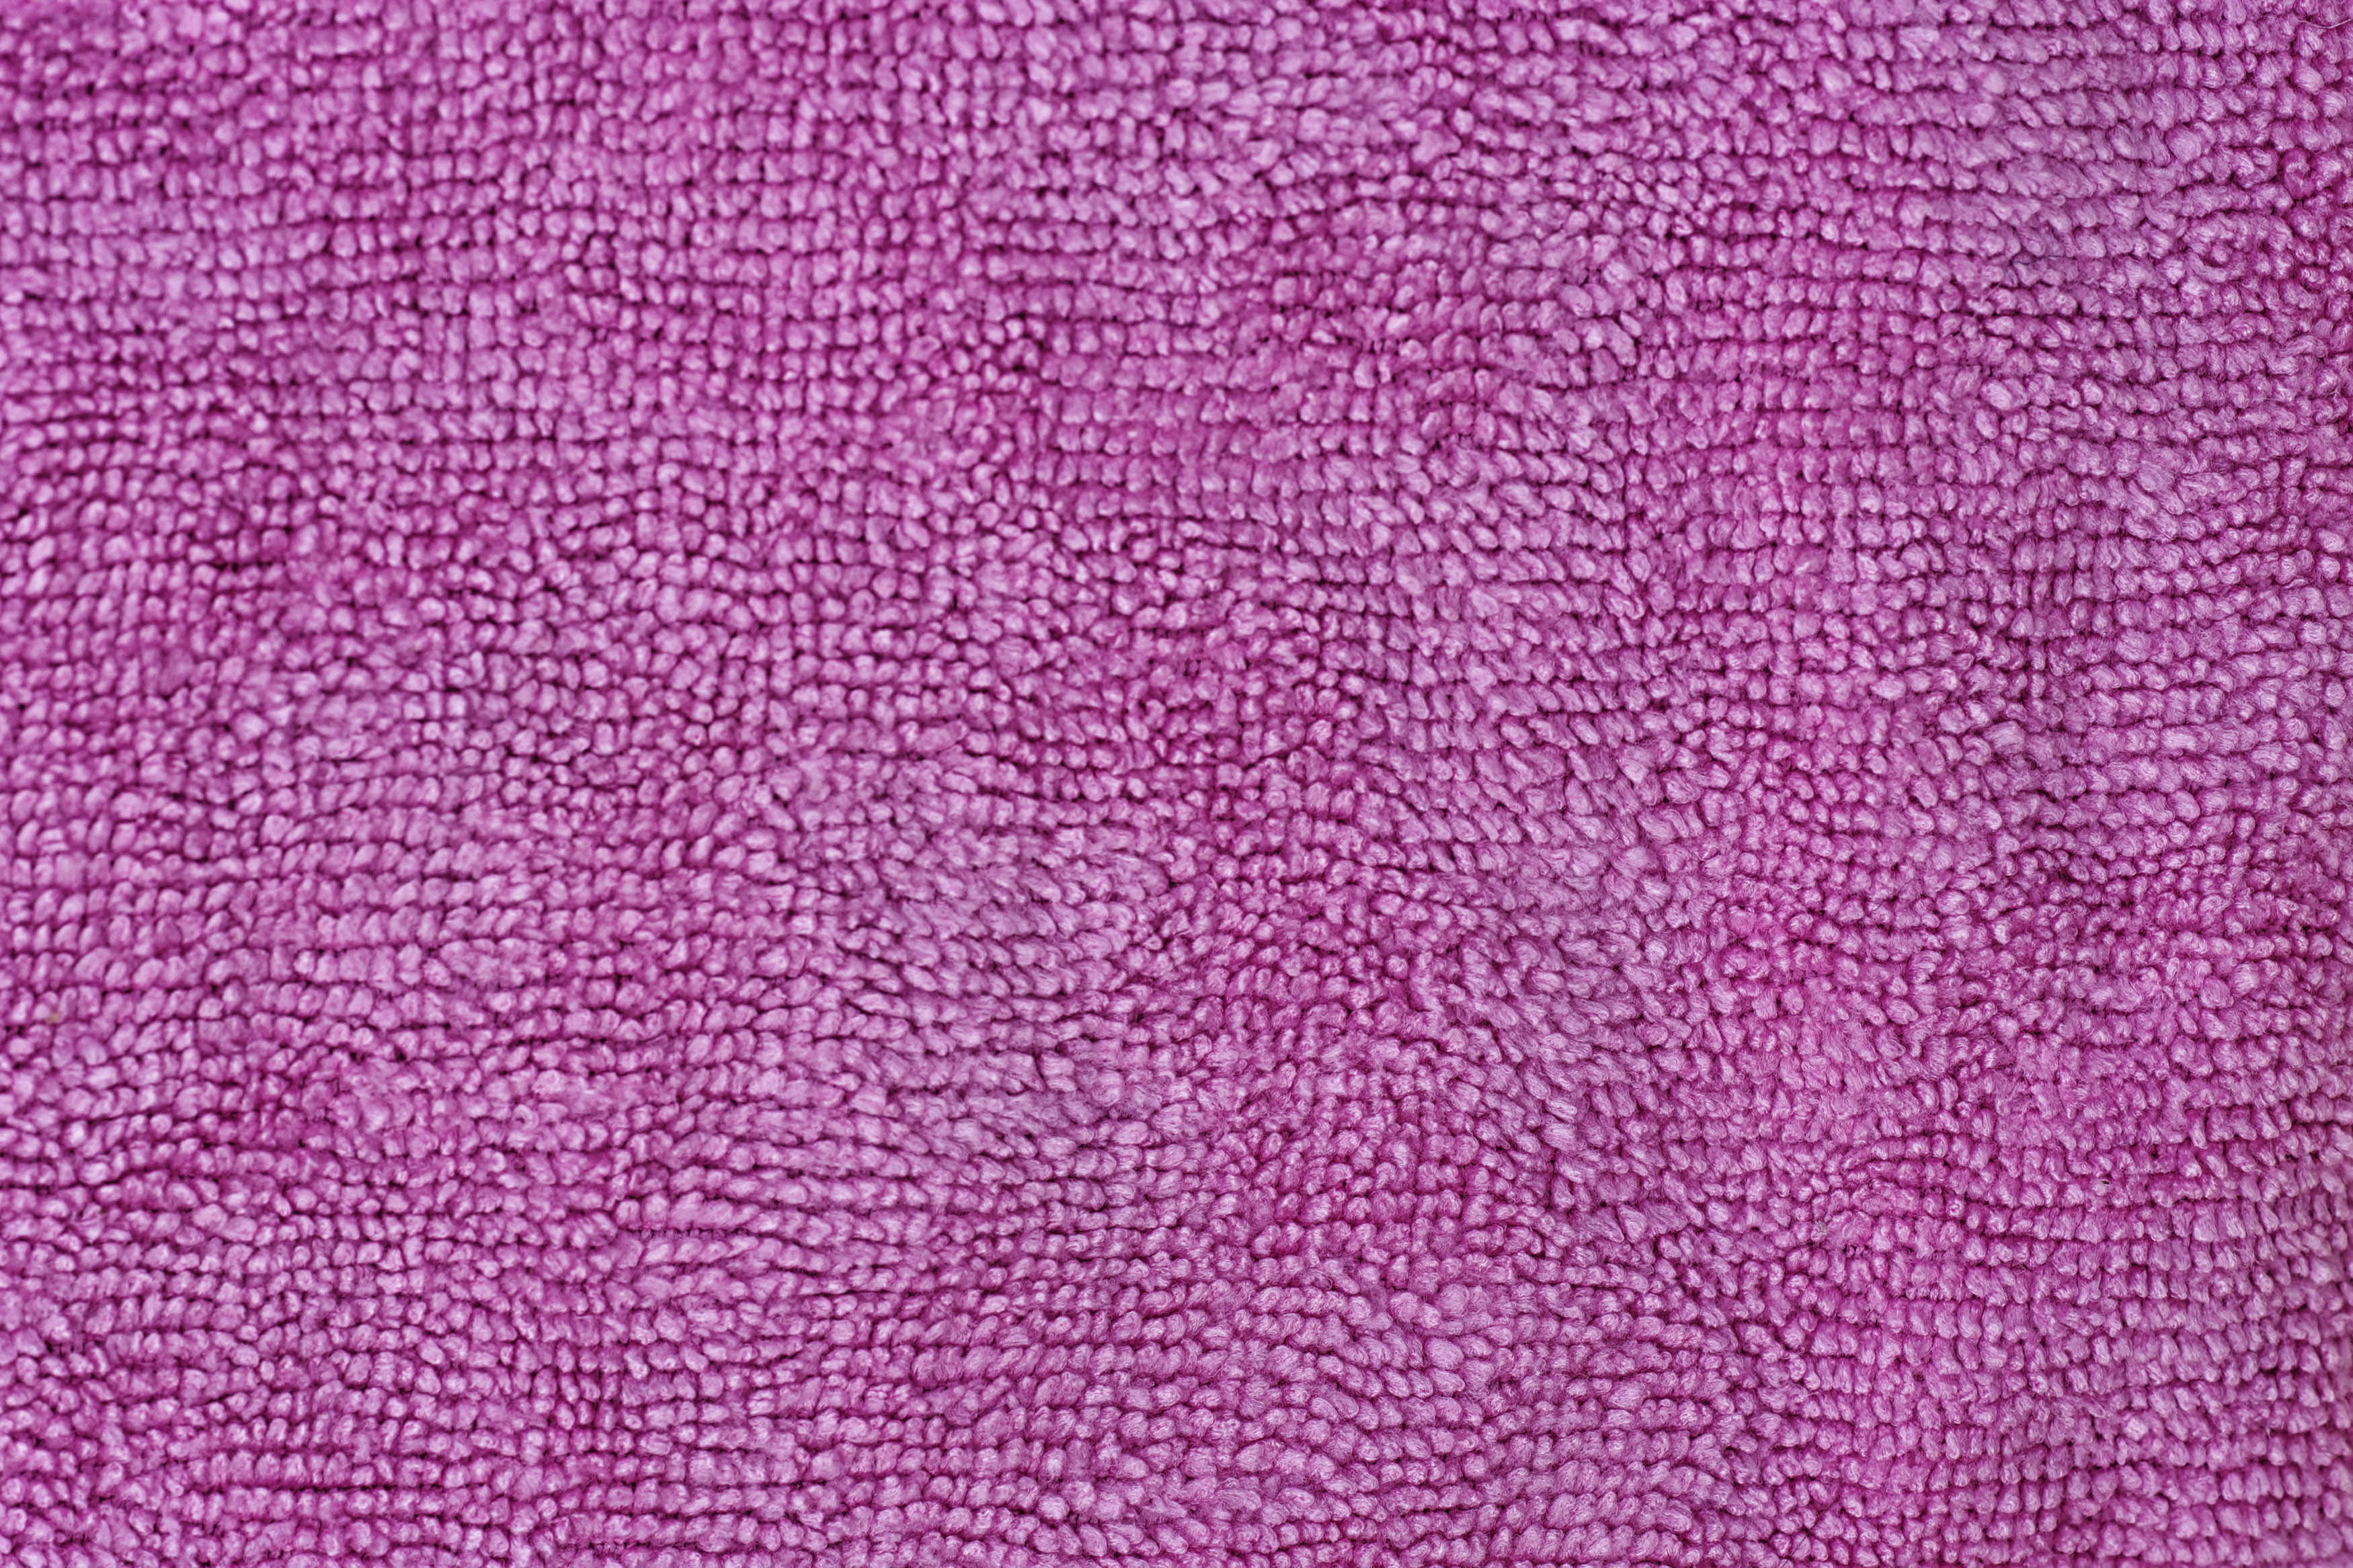 Download 3 Closeup Deep Pink Towel Texture Backgrounds